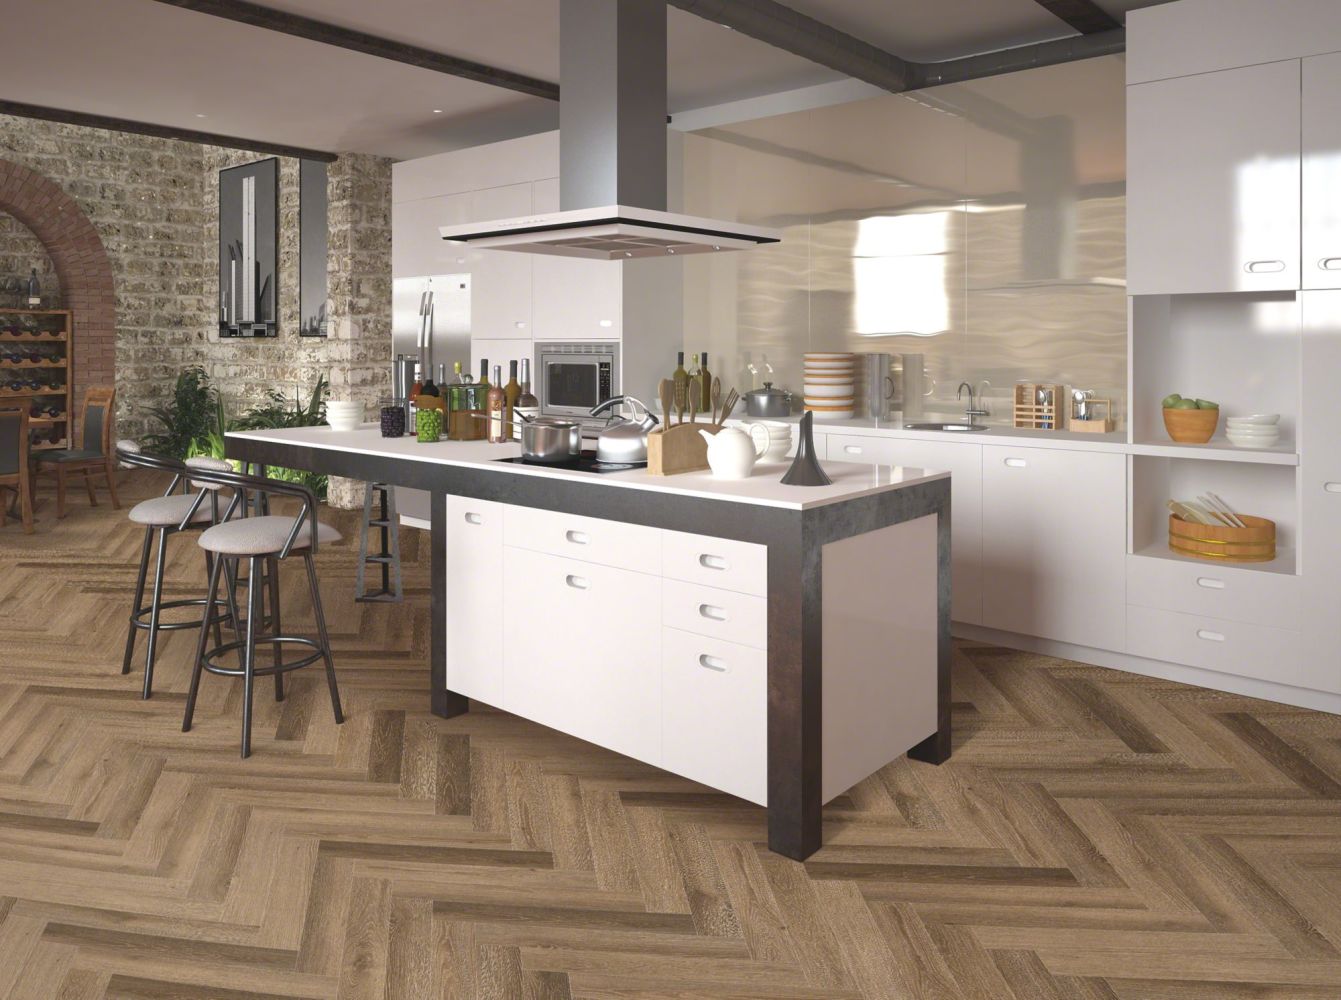 Shaw Floors Resilient Residential Coretec- Plus Enhanced Herring Rome Oak 00793_VV497